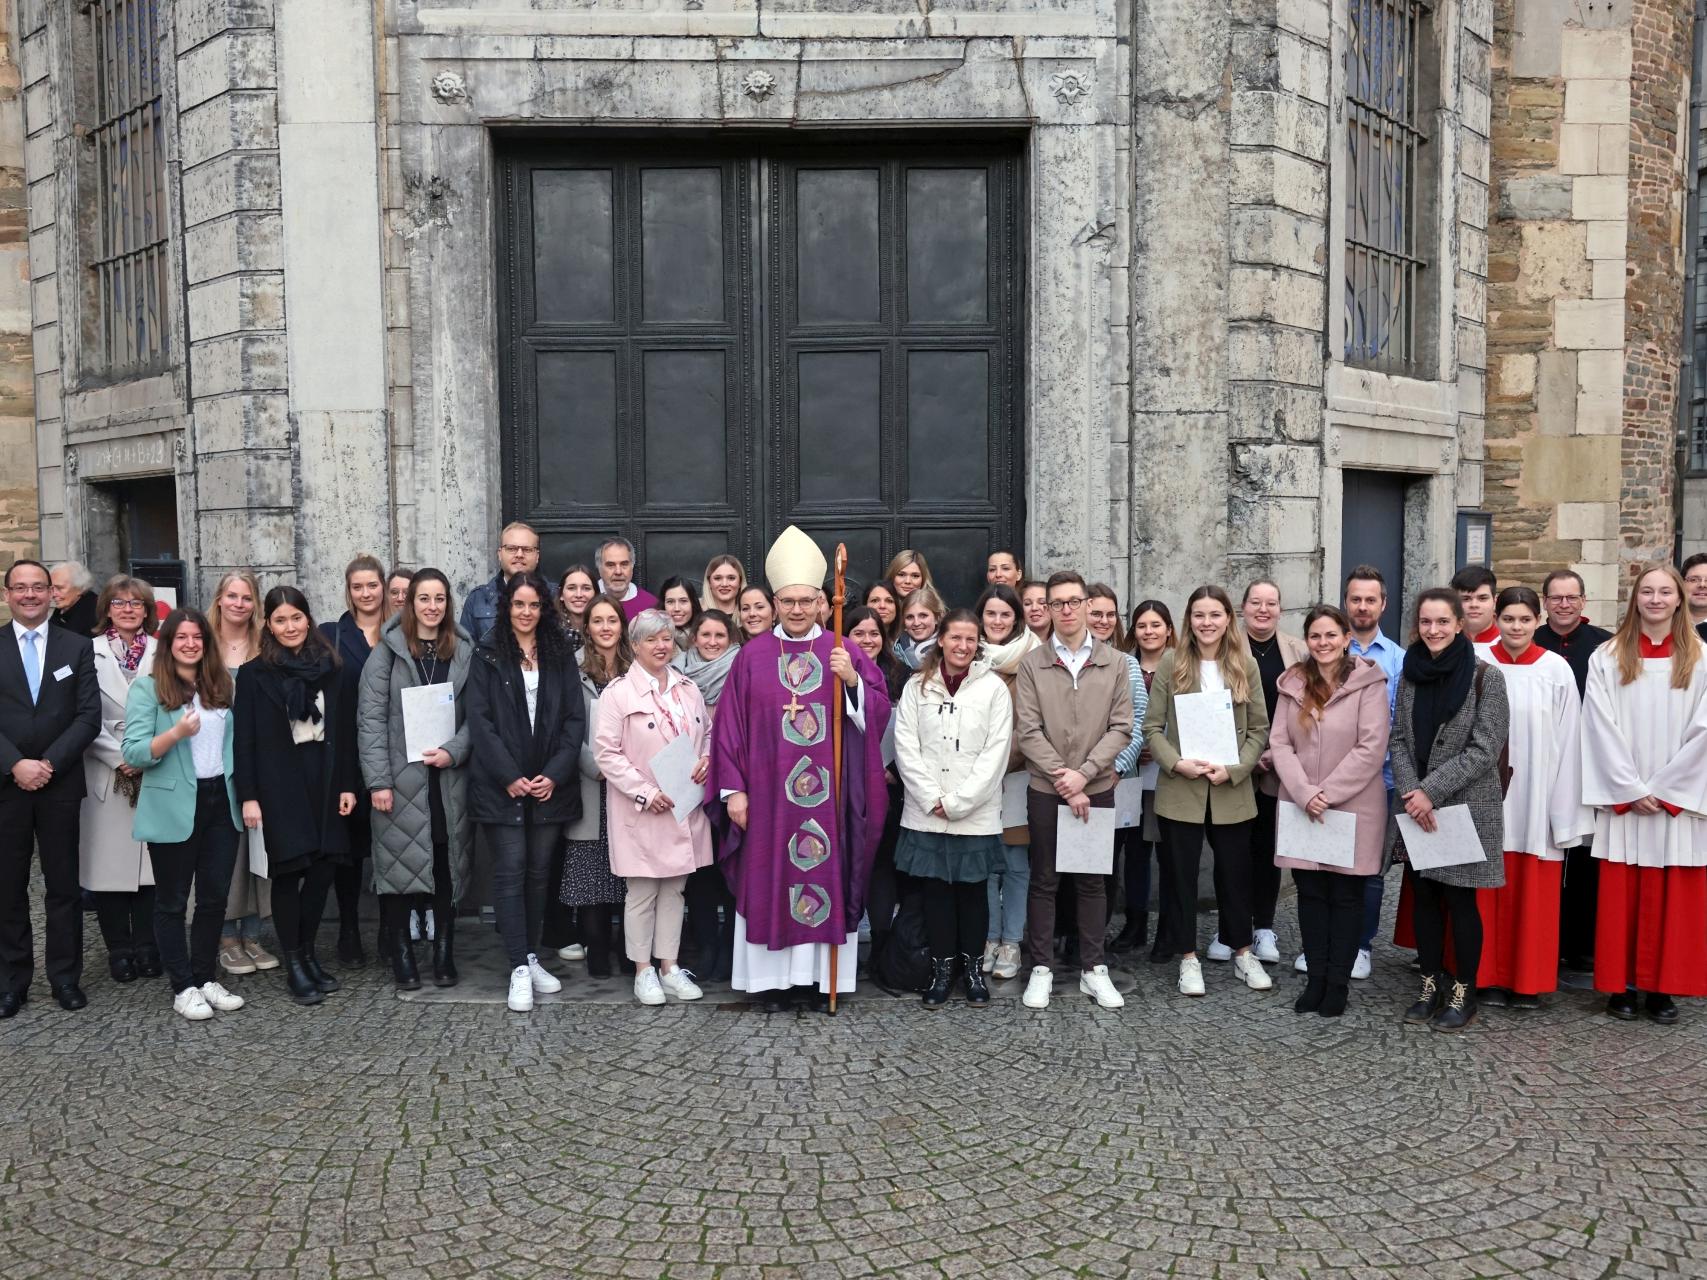 35 Religionslehrerinnen und -lehrer erhalten ihre kirchliche Beauftragung (c) Bistum Aachen - Andreas Steindl